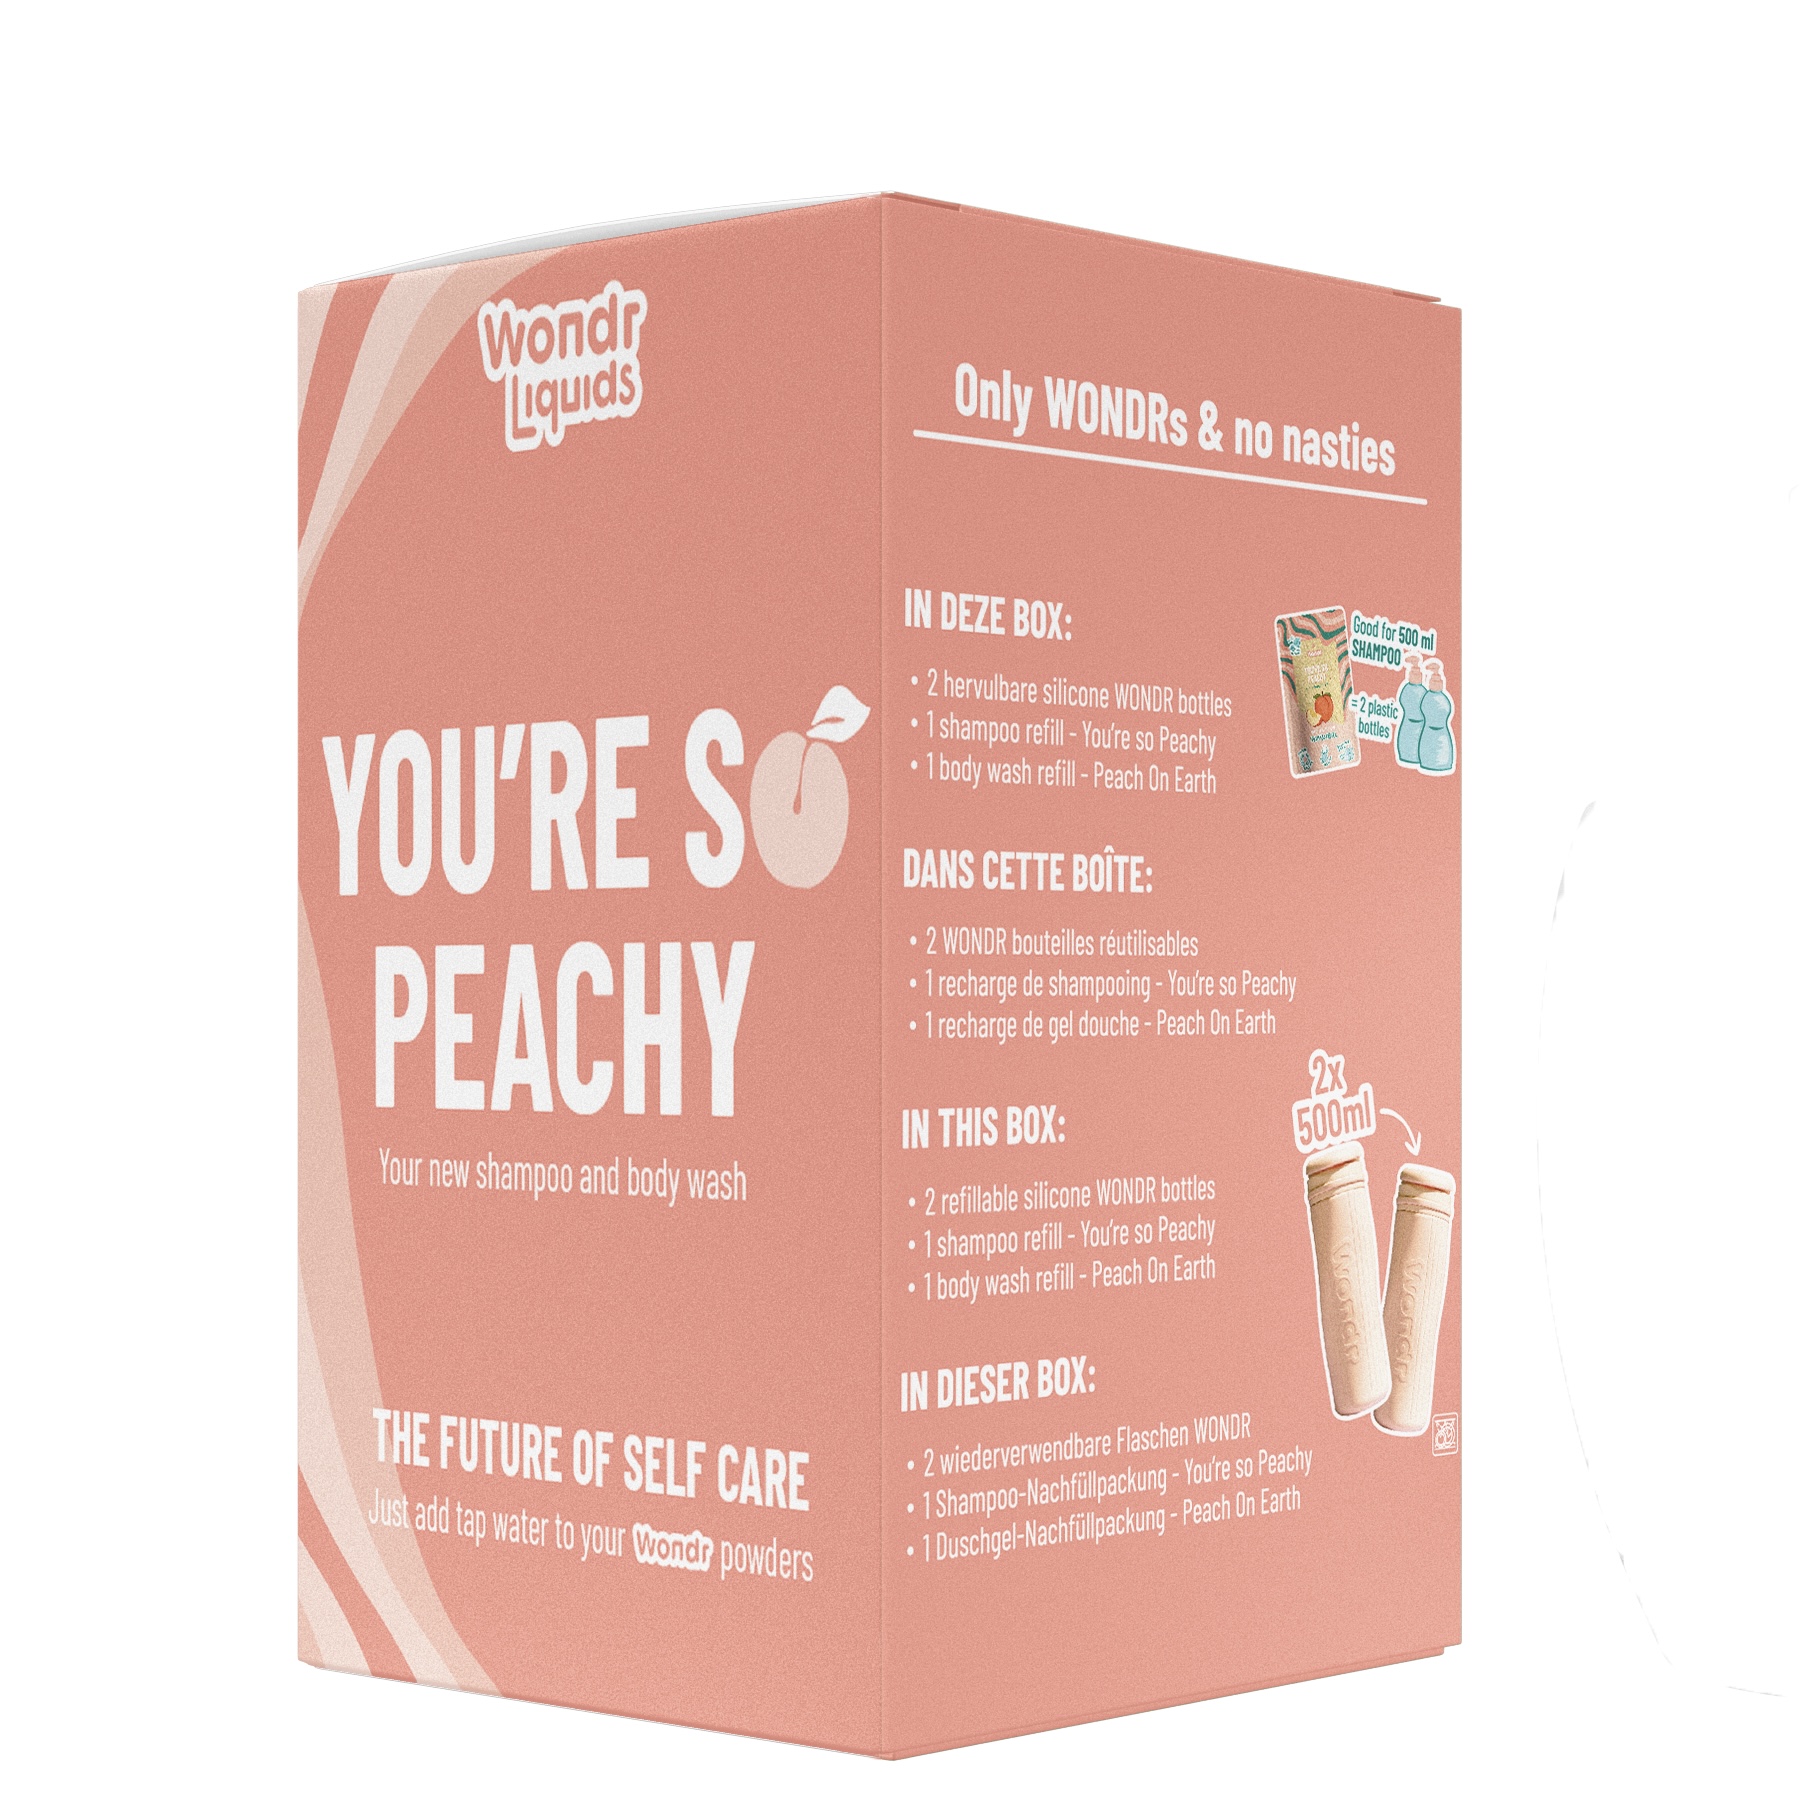 wondr-liquids-youre-so-peachy